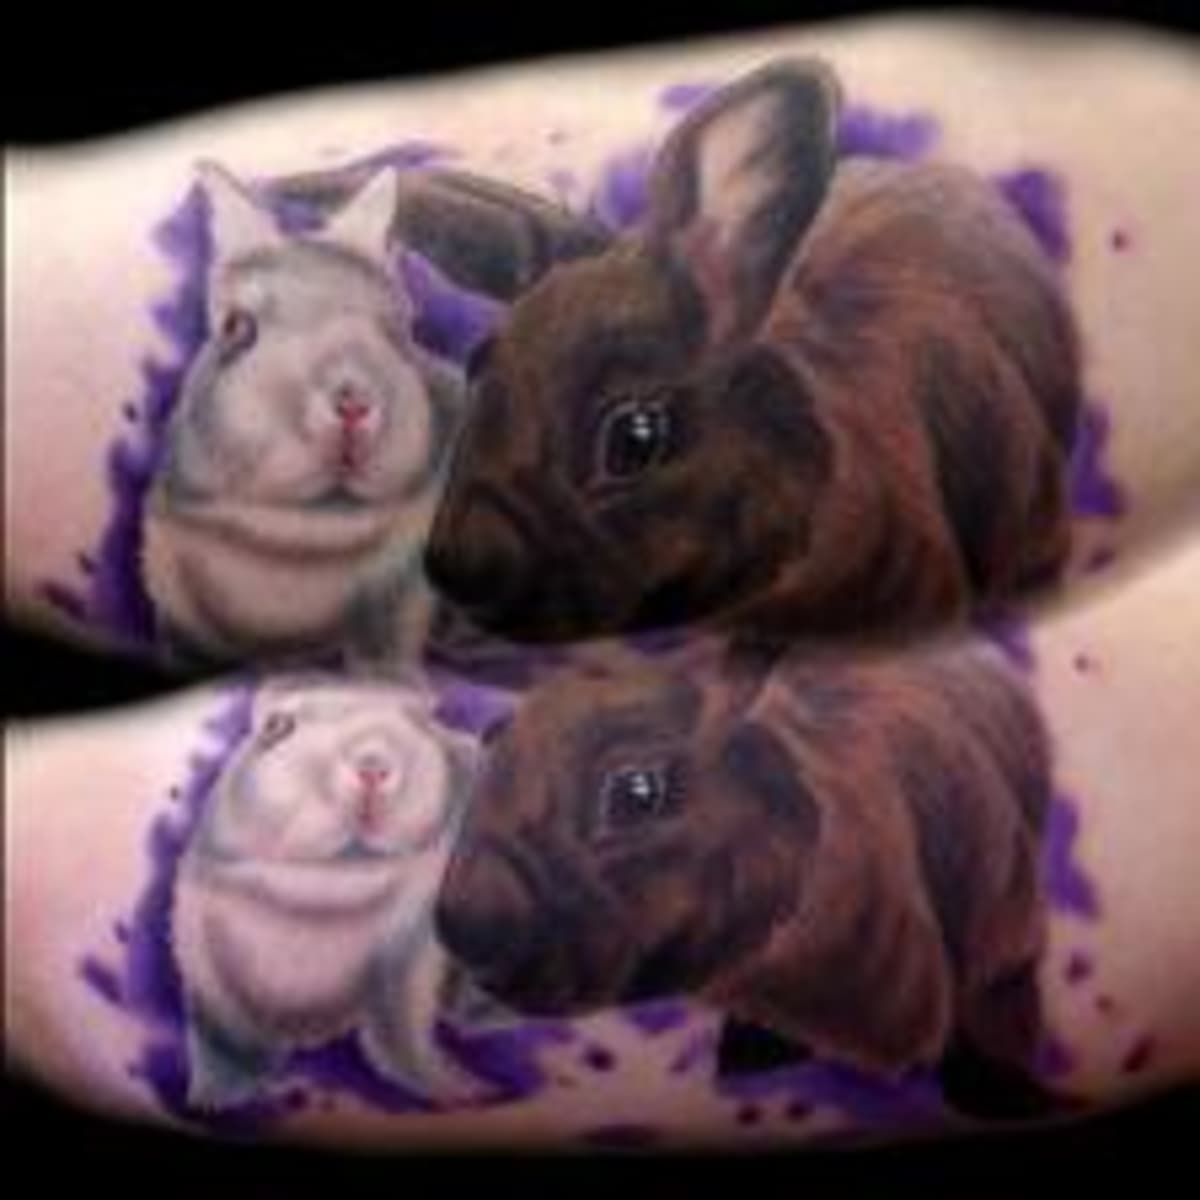 White Rabbit Tattoo by Pony Lawson by PonyLawson on DeviantArt